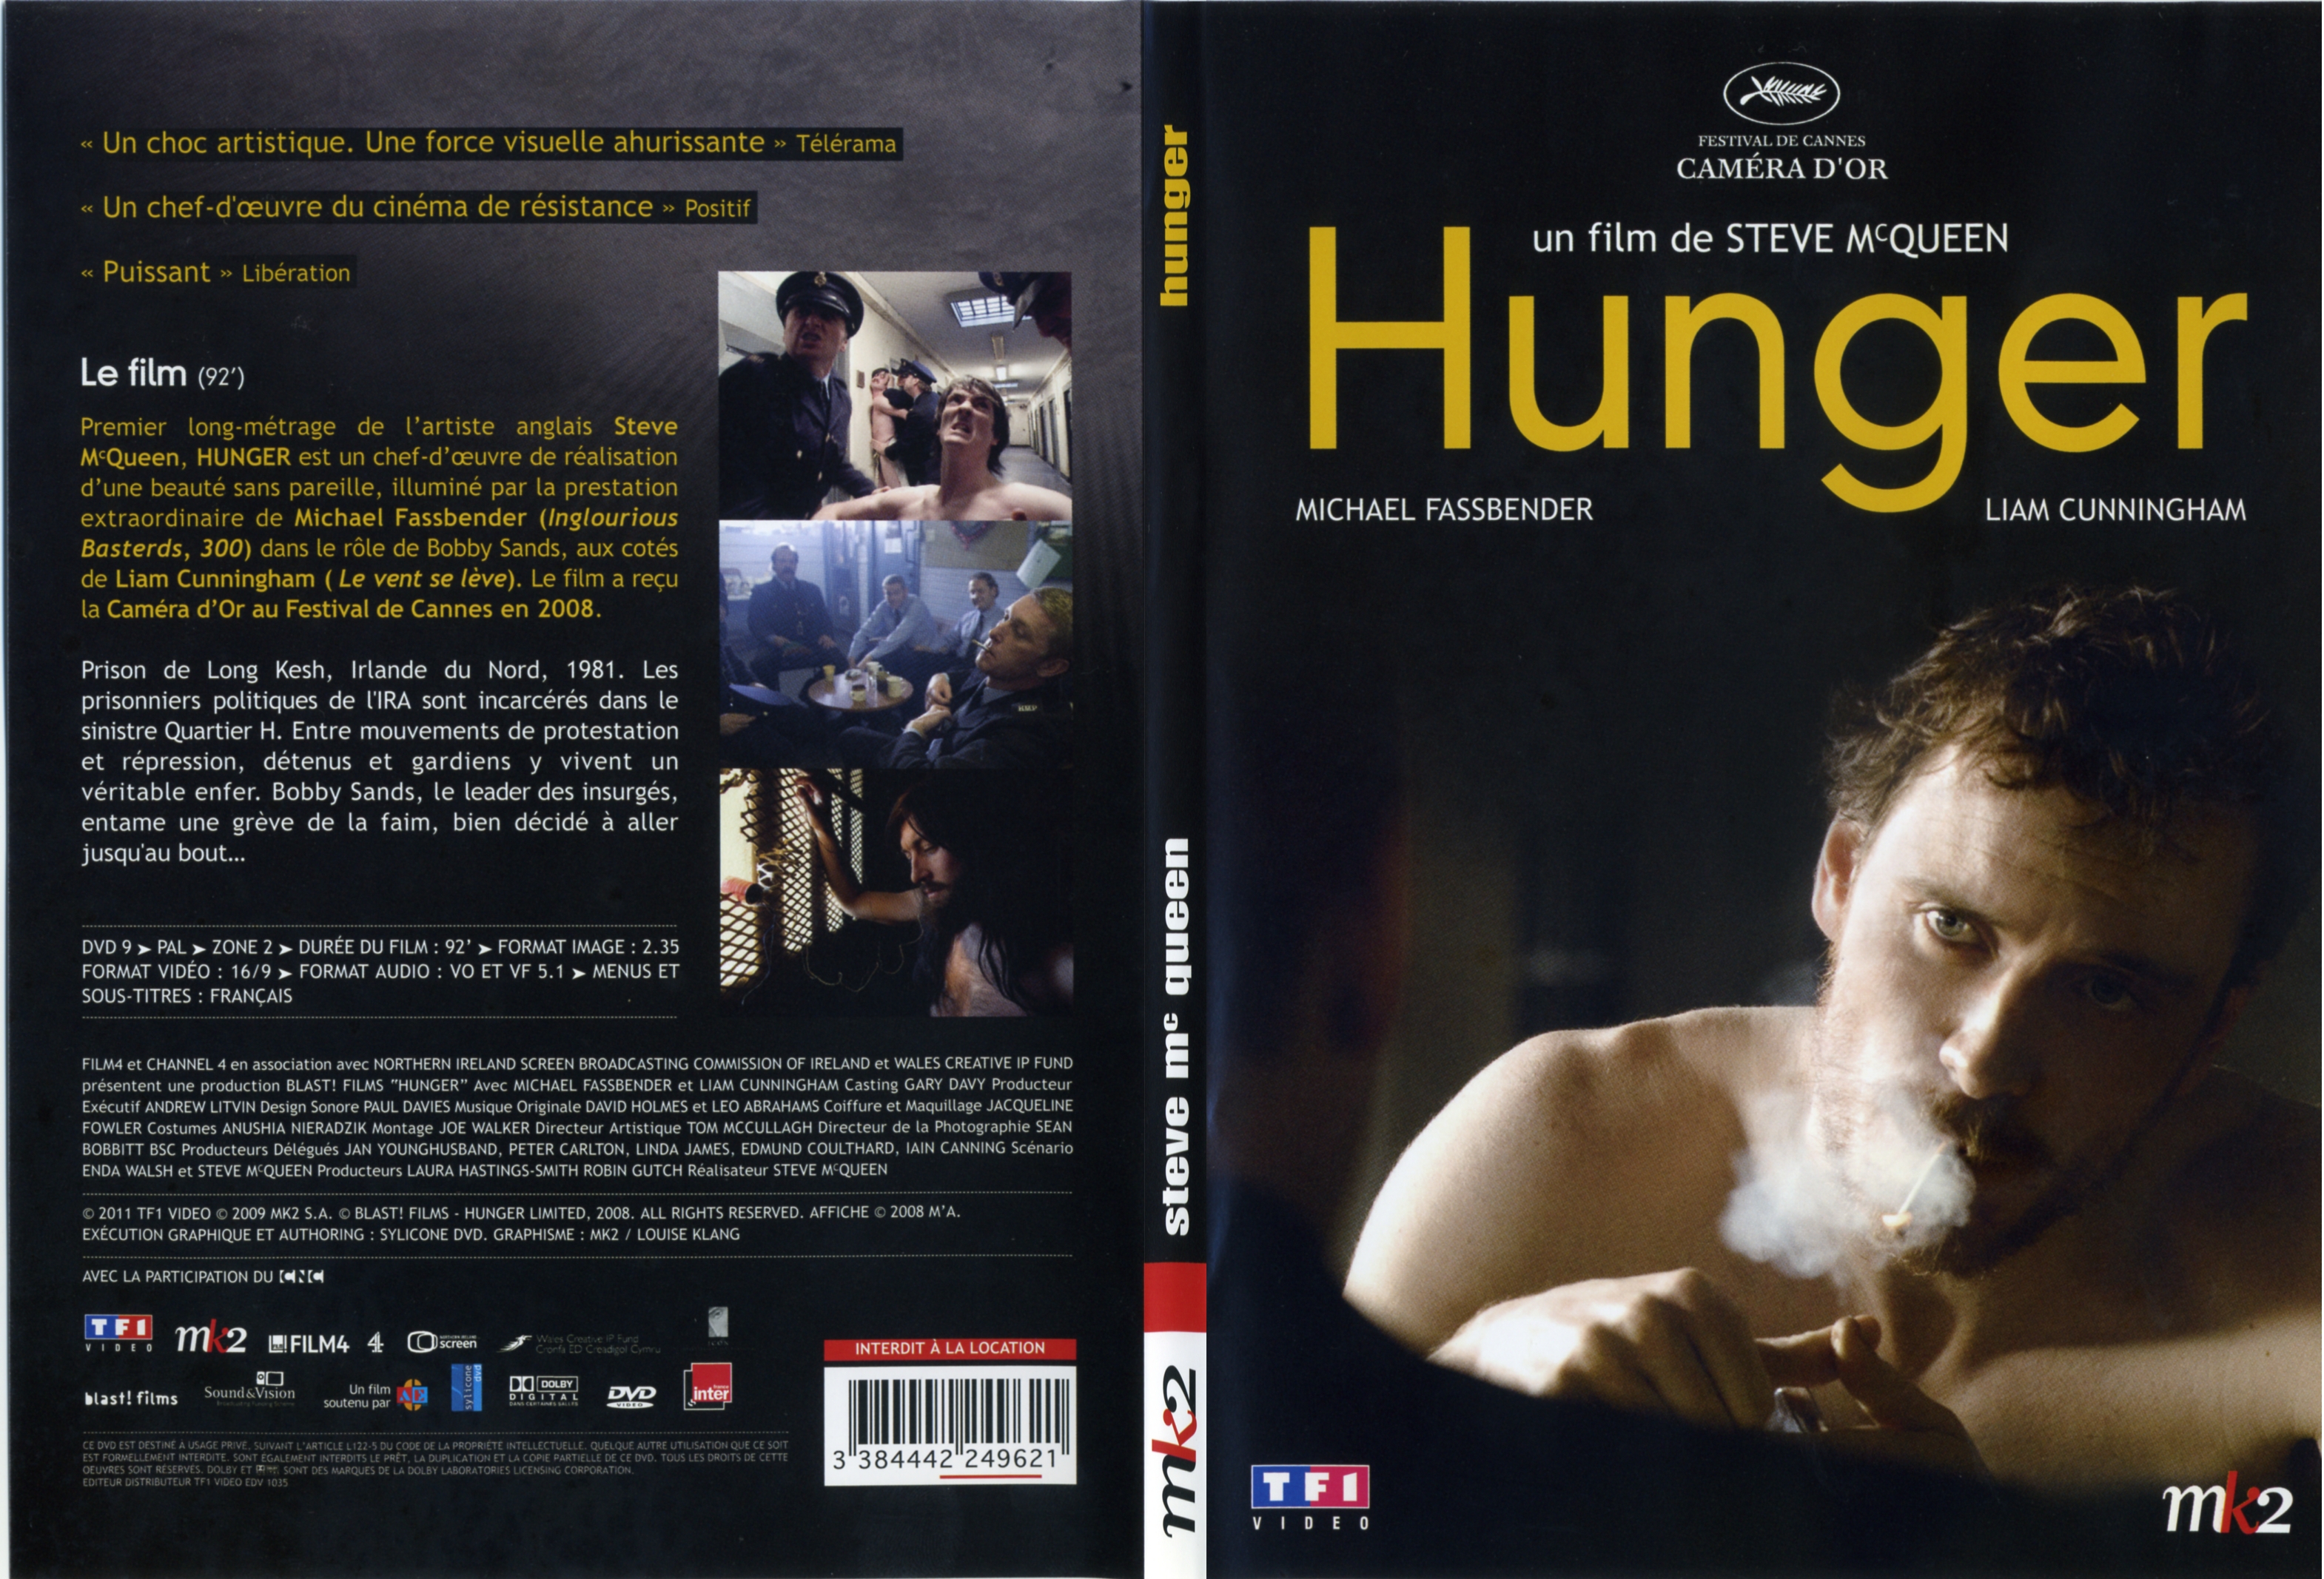 Jaquette DVD Hunger - SLIM